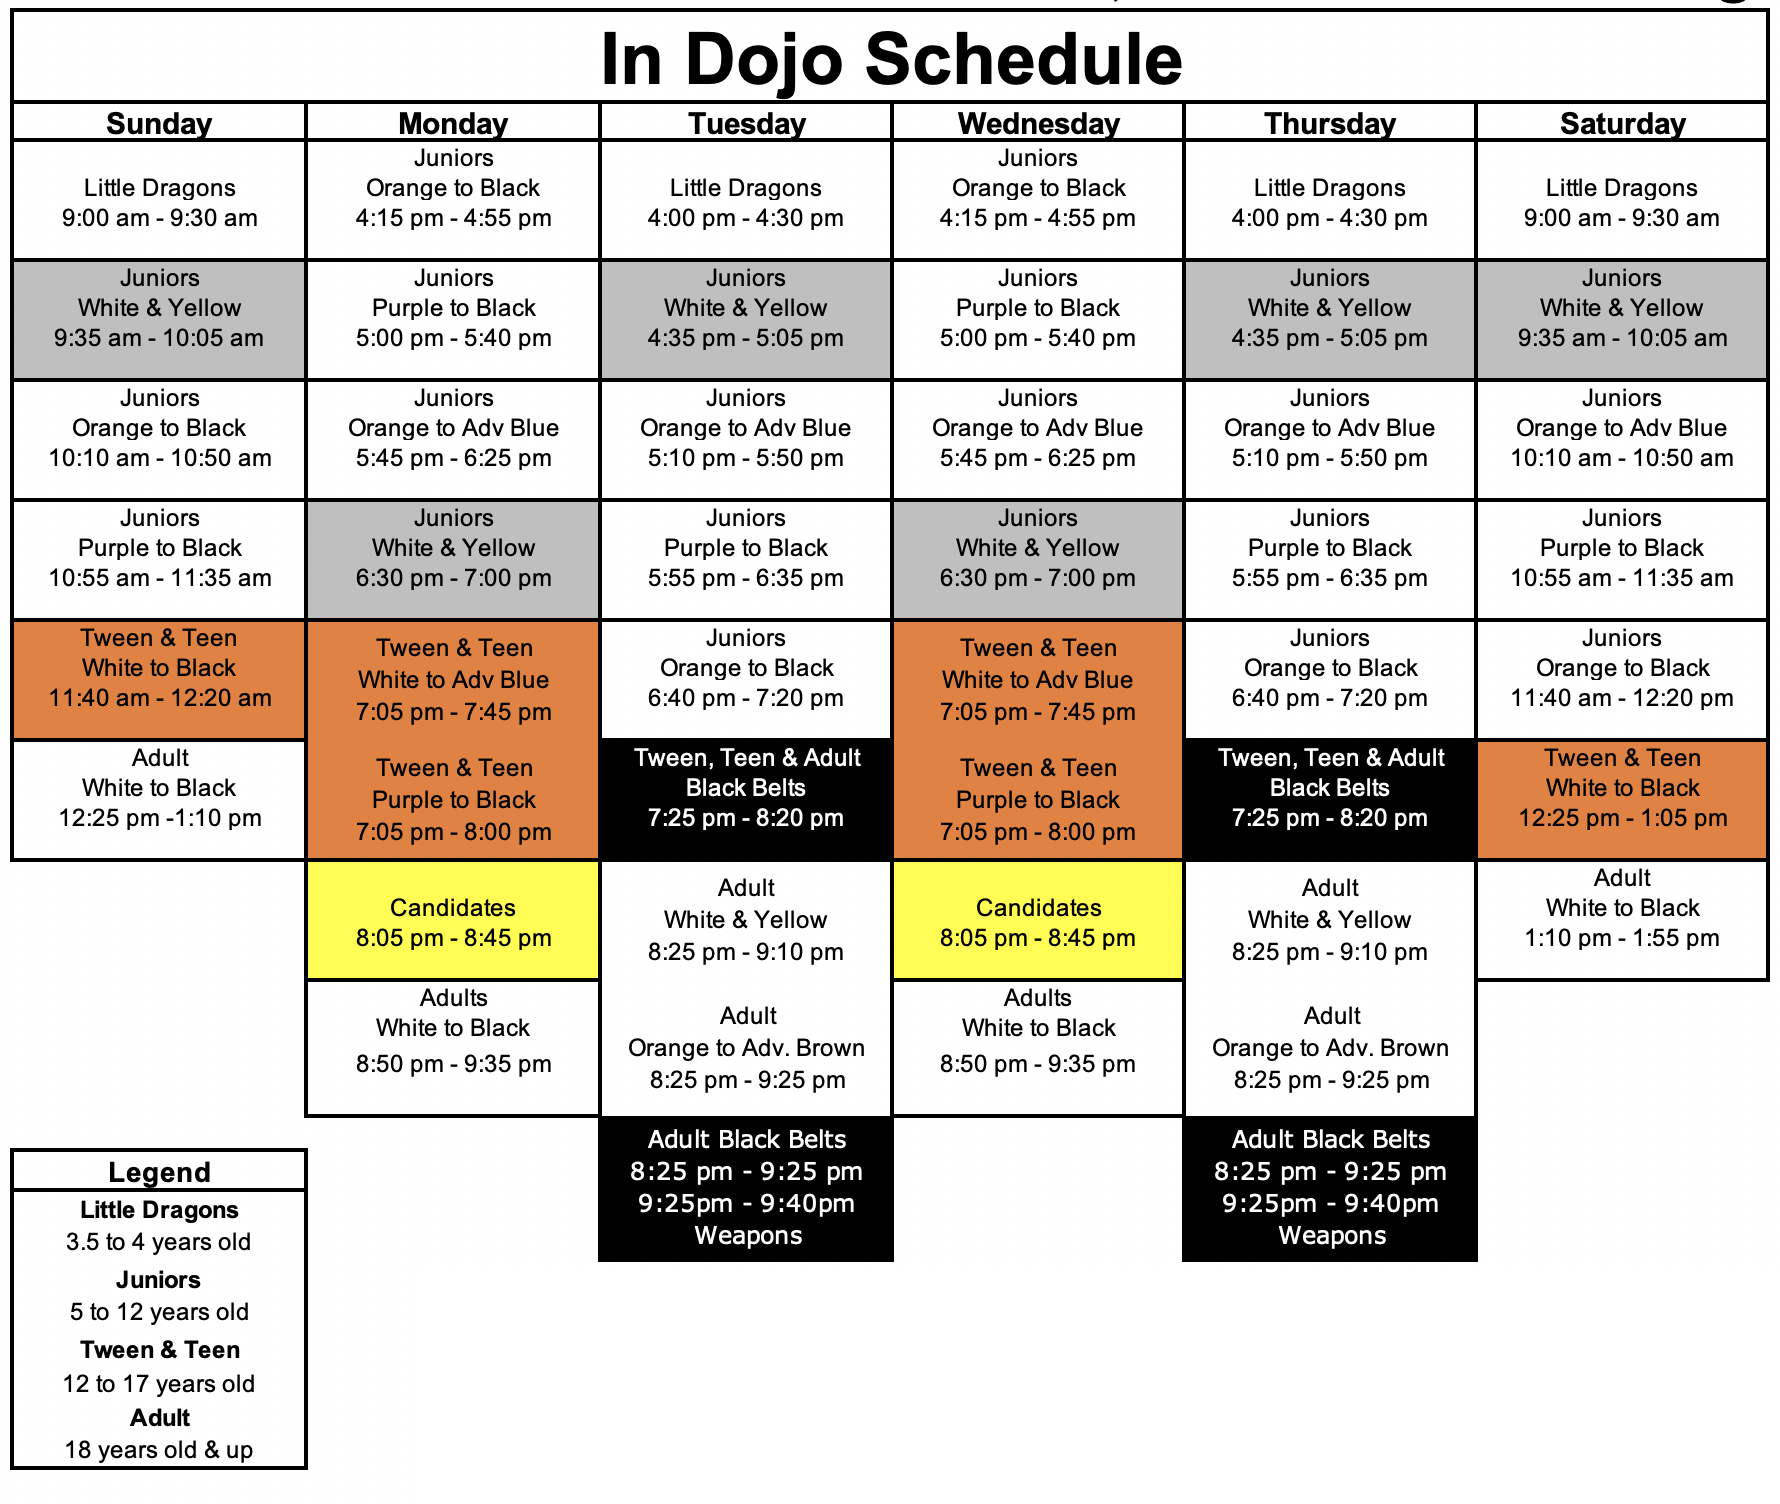 Fall 2021 In Dojo Schedule